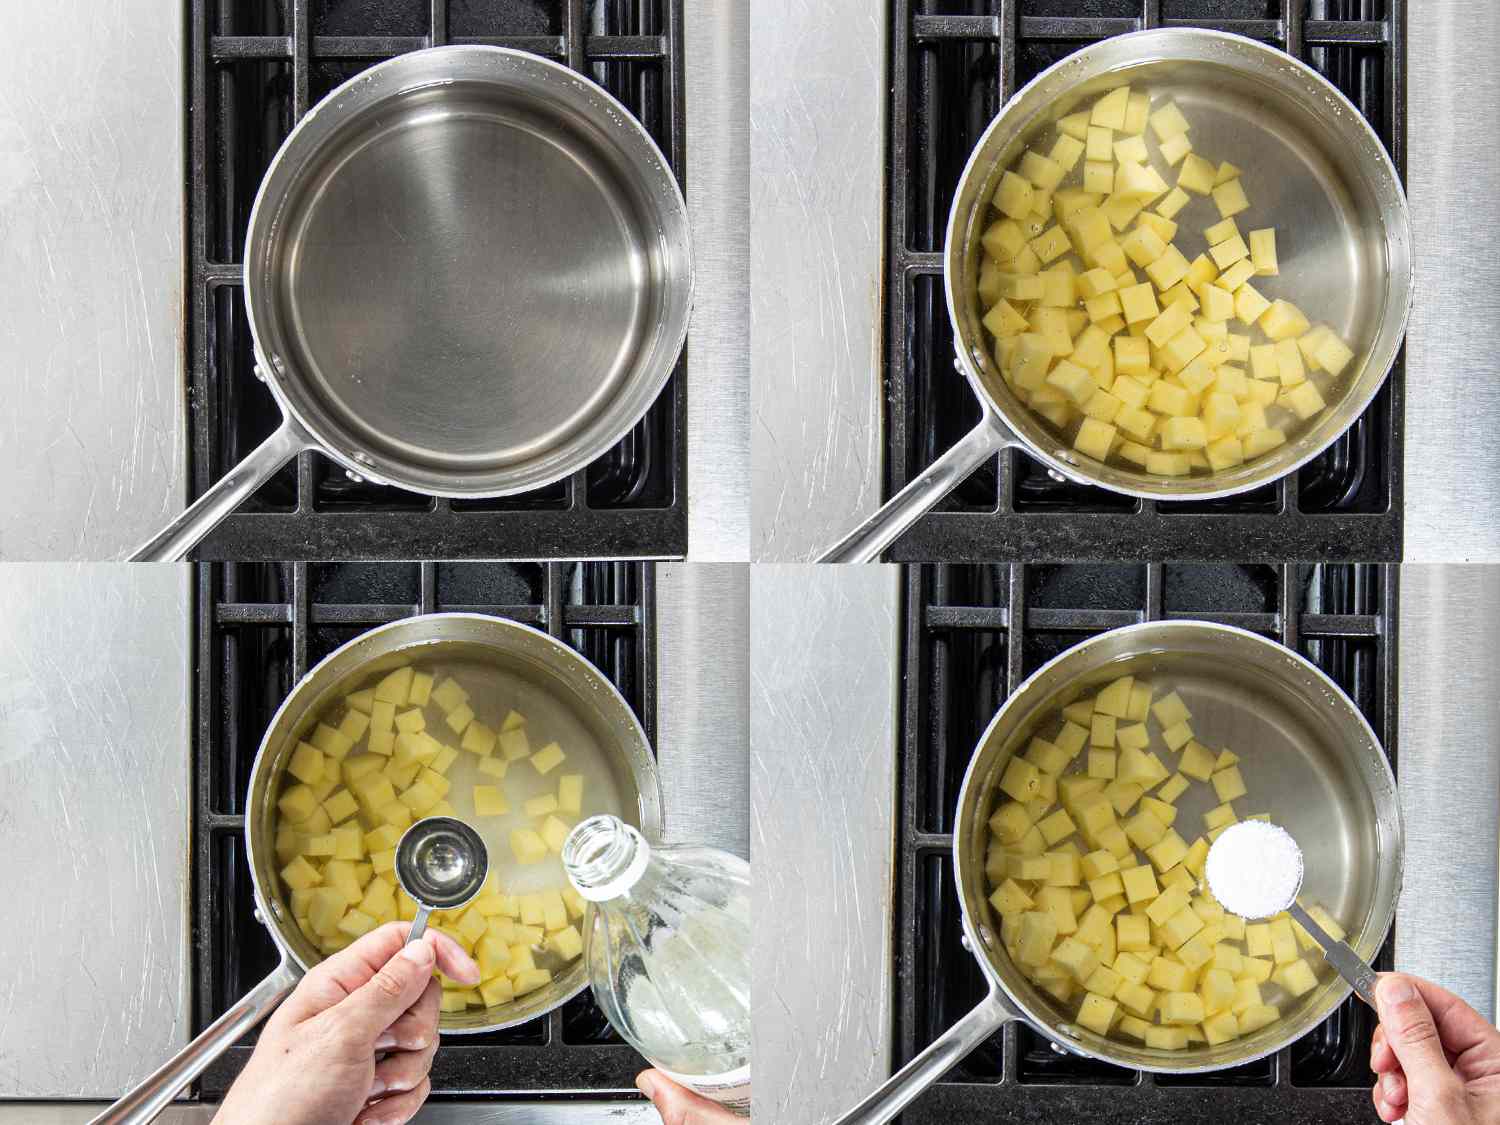 四幅图像拼贴。左上:炉子上有一壶水。右上:土豆加水加入锅中。左下:一锅土豆中加入醋。右下:往锅里加盐